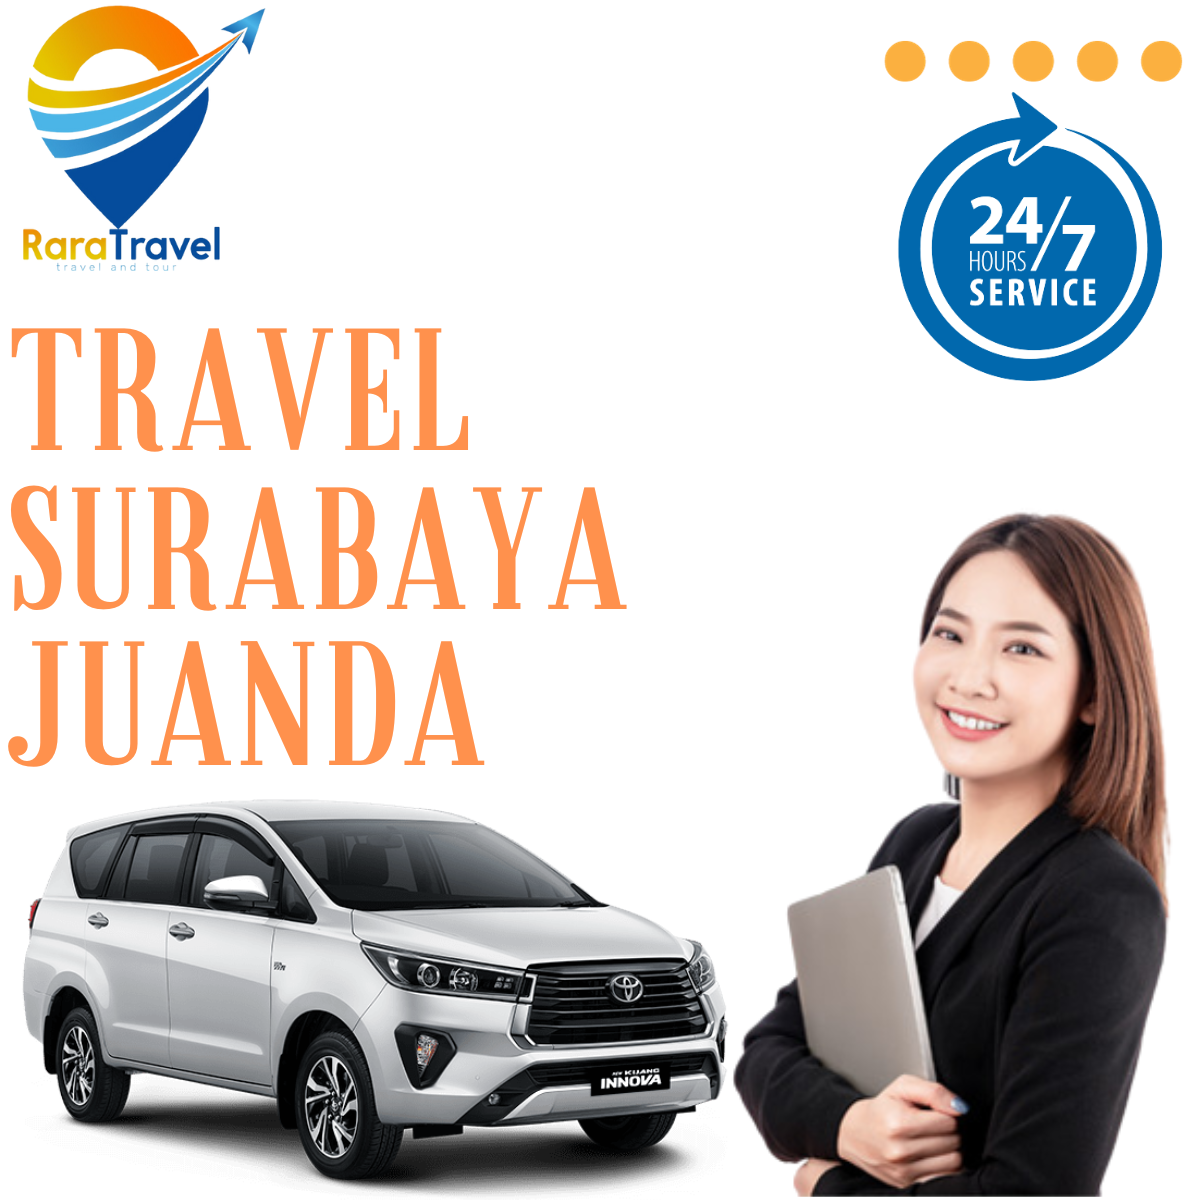 Travel Surabaya ke Bandara Juanda PP Murah 24 Jam via TOLL Mulai Rp 80K